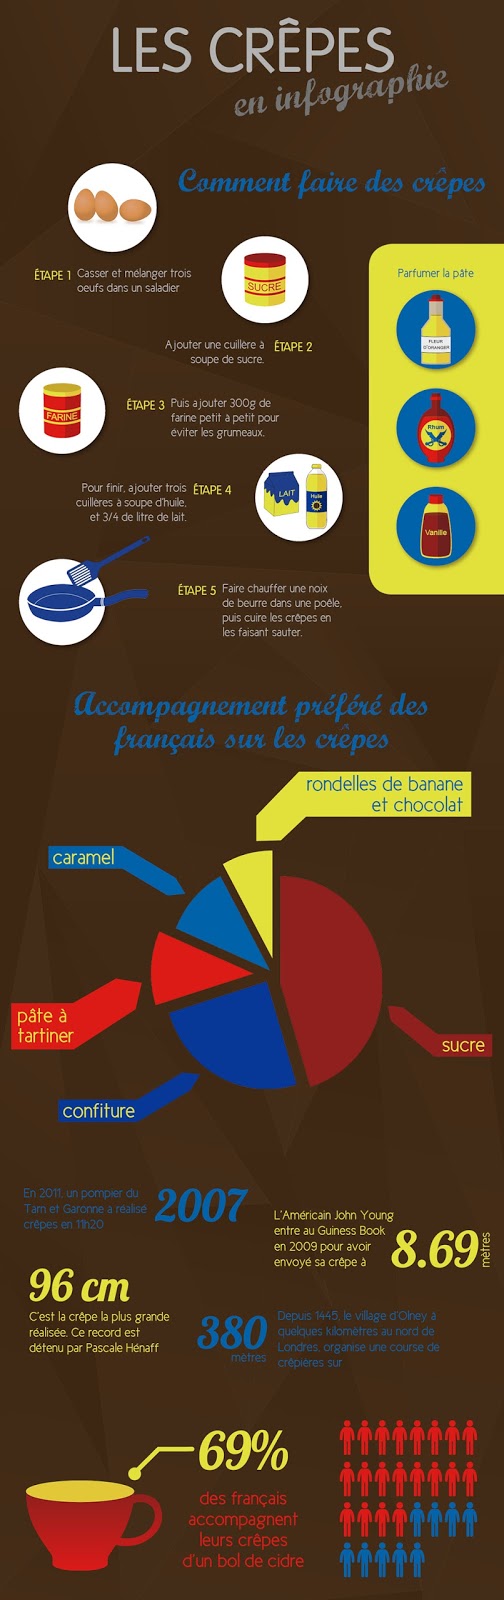 Chandeleur - przepis na naleśniki 5 + dane o święcie - Francuski przy kawie